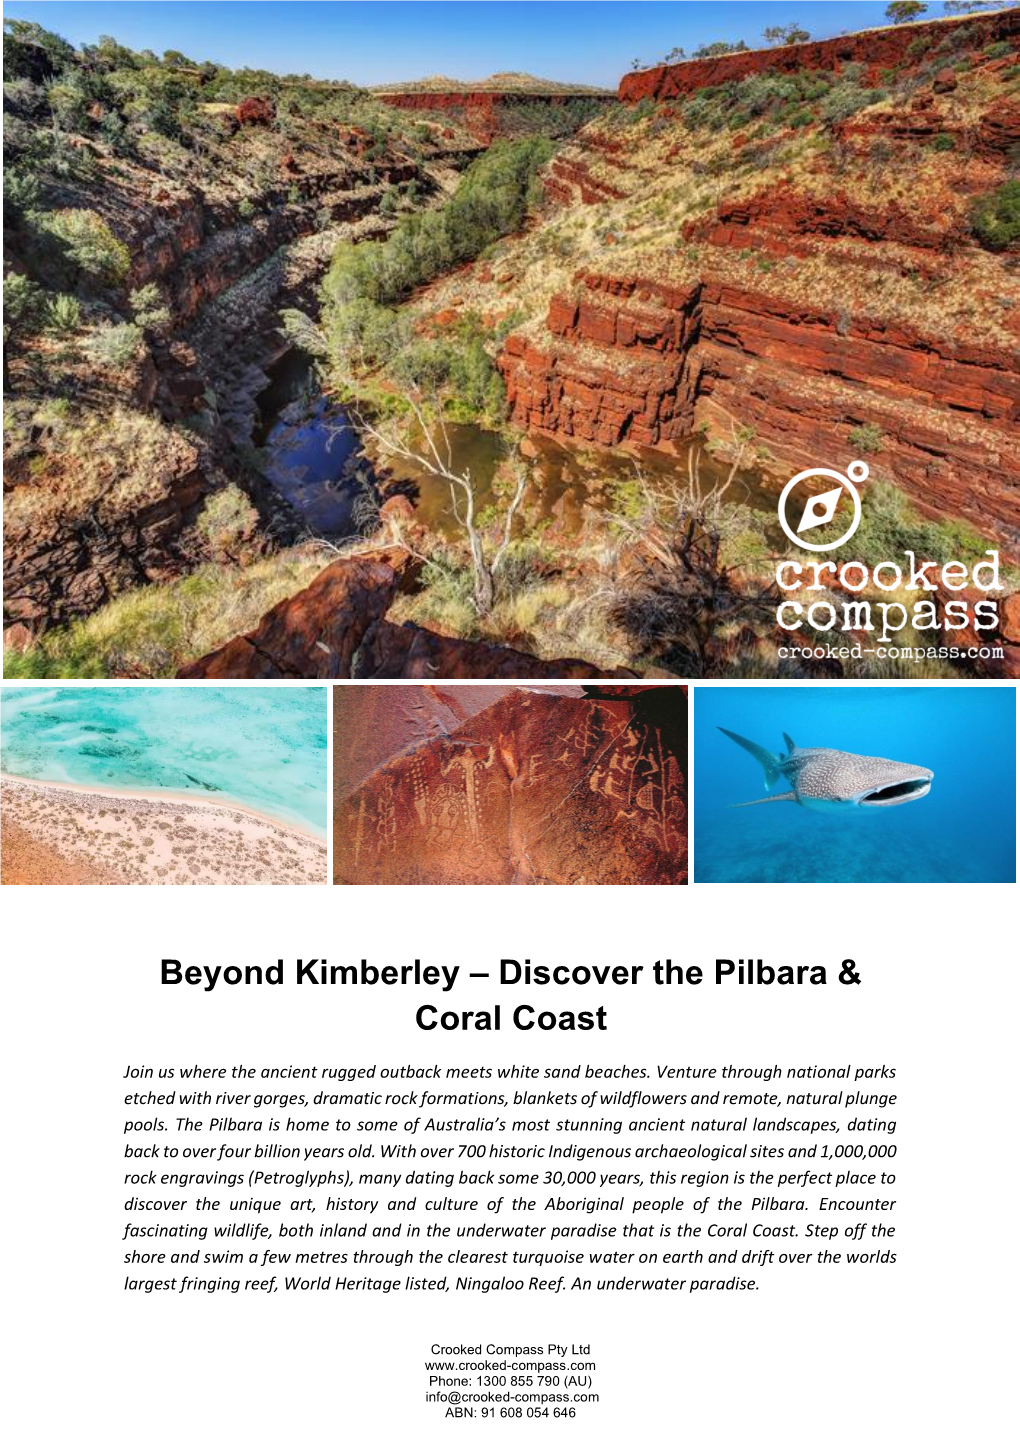 Discover the Pilbara & Coral Coast